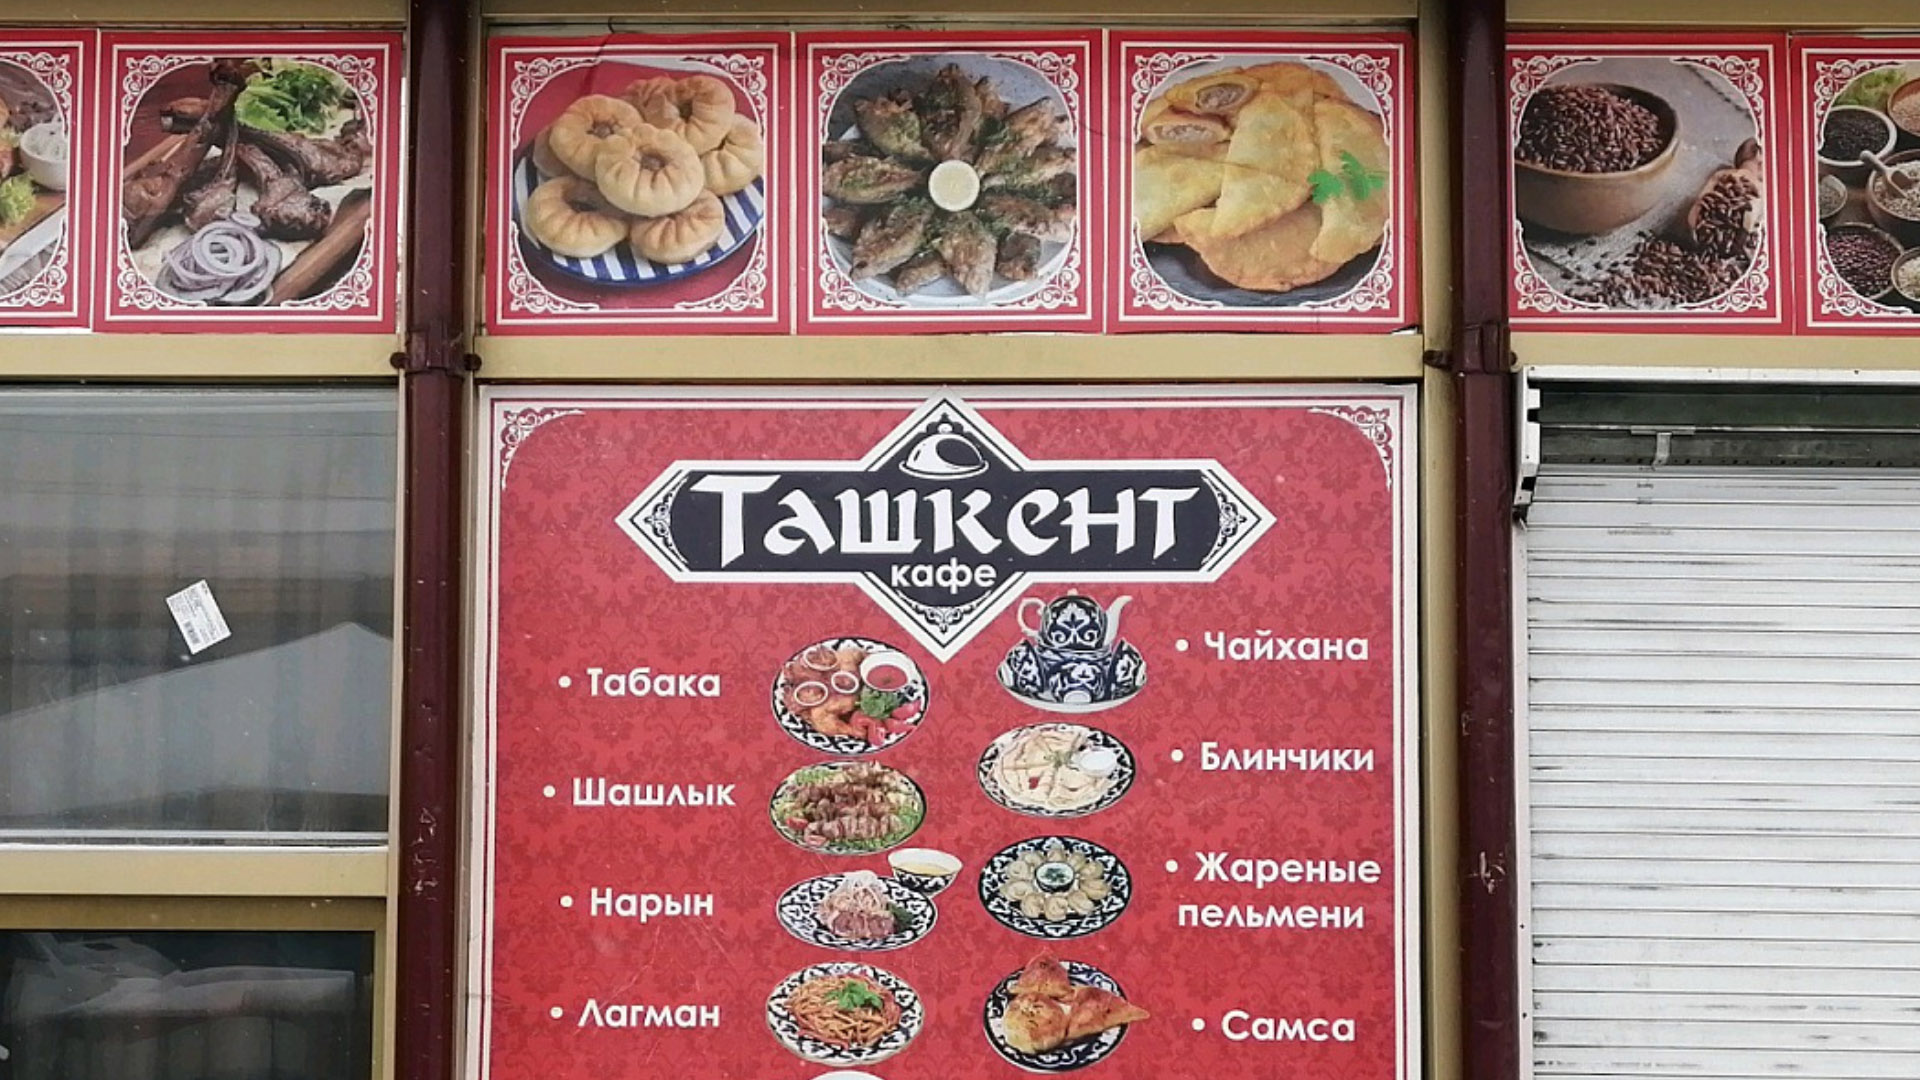 tashkent Ответ государственных органов по обращению незаконной торговли в кафе Ташкент